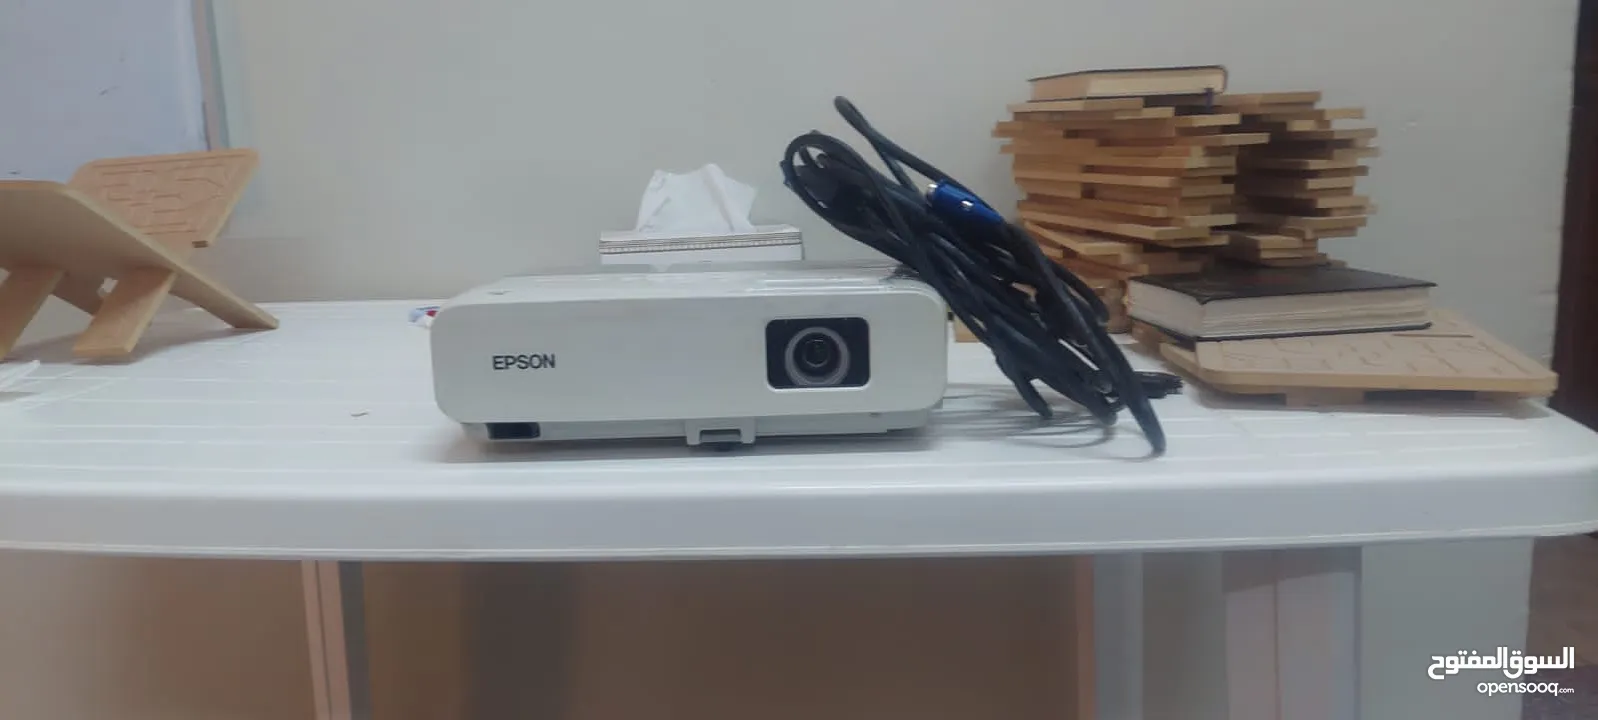 Epson Projector  استخدام خفيف جدا